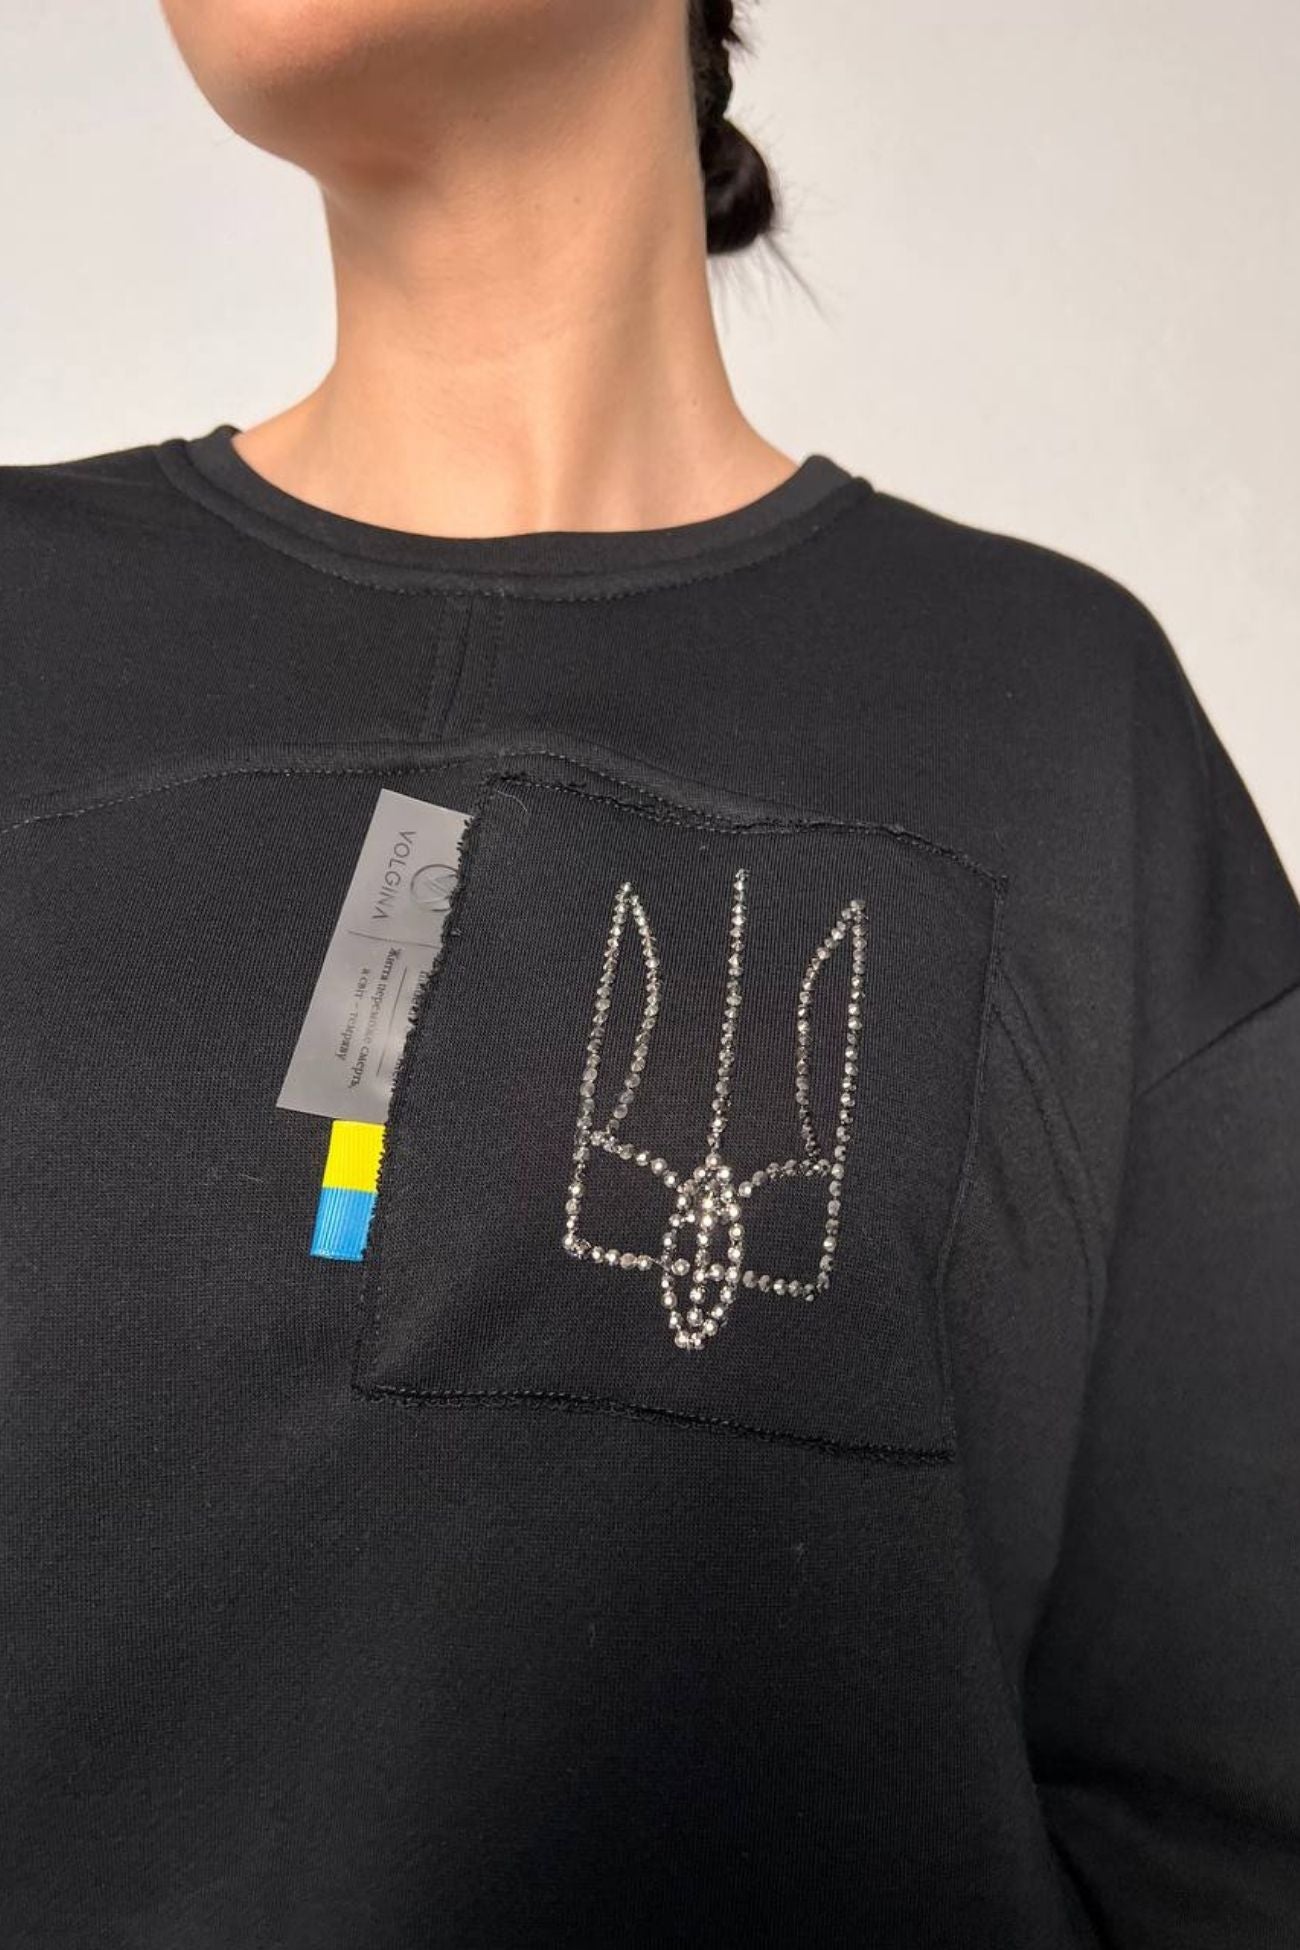 Original Black Fleece Sweatshirt with Ukrainian Coat of Arms